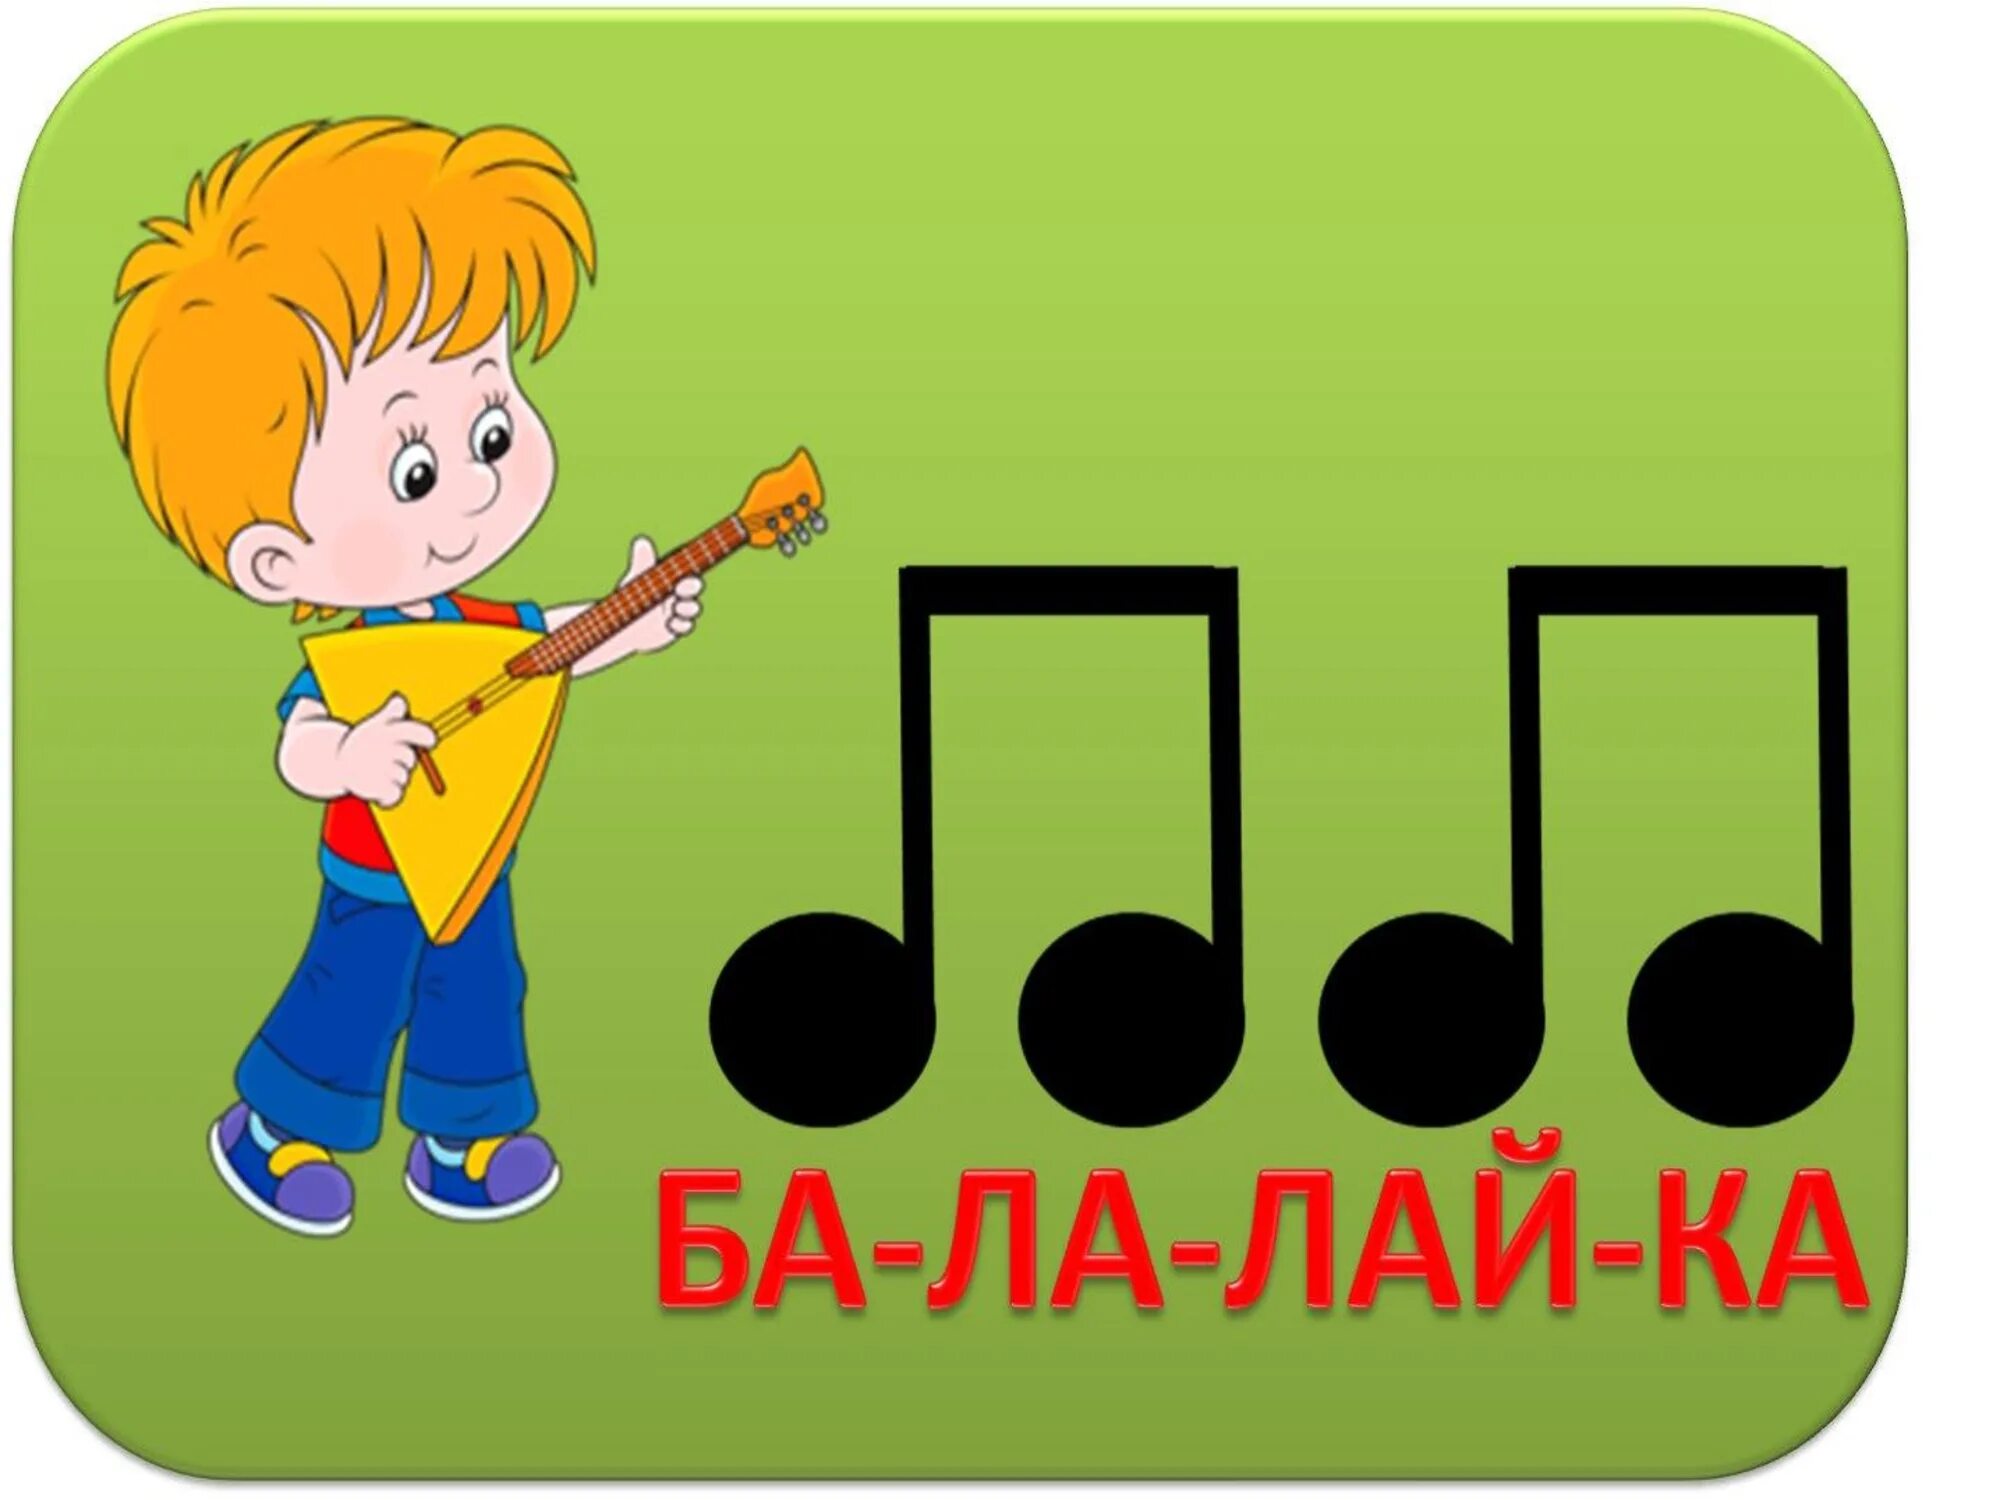 Музыкальная игра mp3. Ритмослов музыкально-дидактическая игра. Музыкальные карточки для дошкольников. Музыкально-ритмические карточки для детей. Музыкальные игрушки для детей дошкольного возраста.